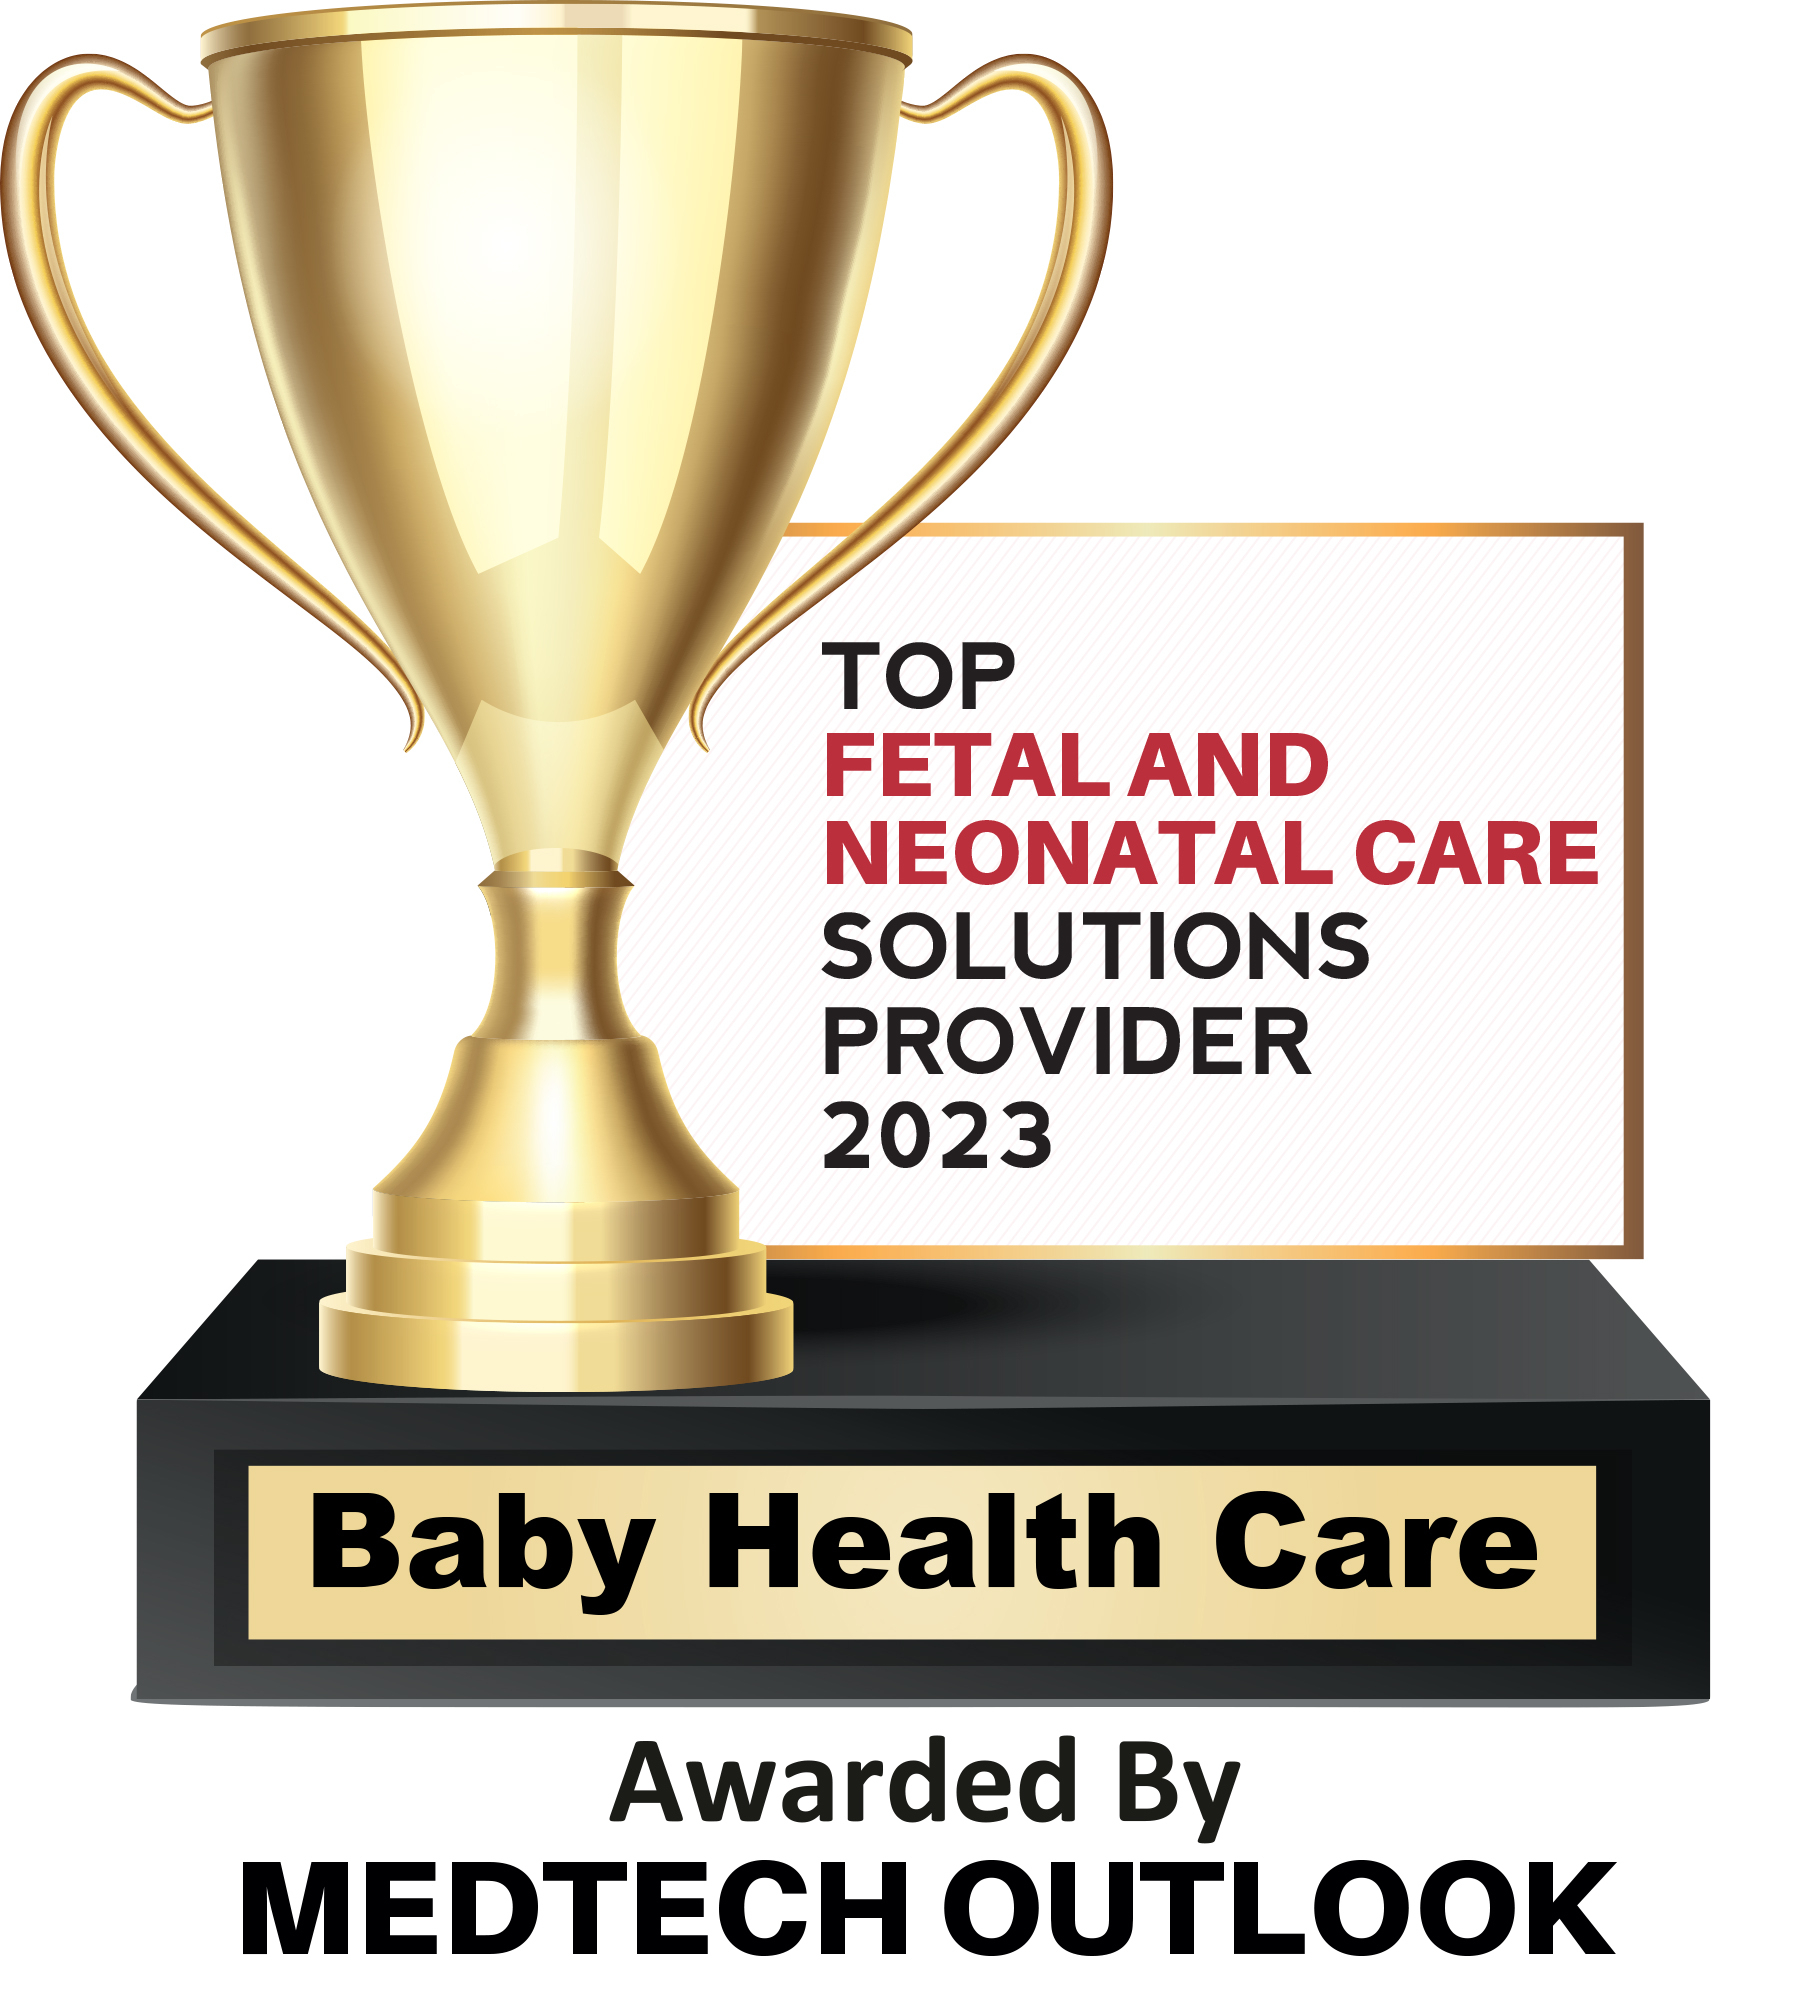 https://mms.businesswire.com/media/20230531005595/en/1806858/5/Baby_Health_Care_Award_logo.jpg